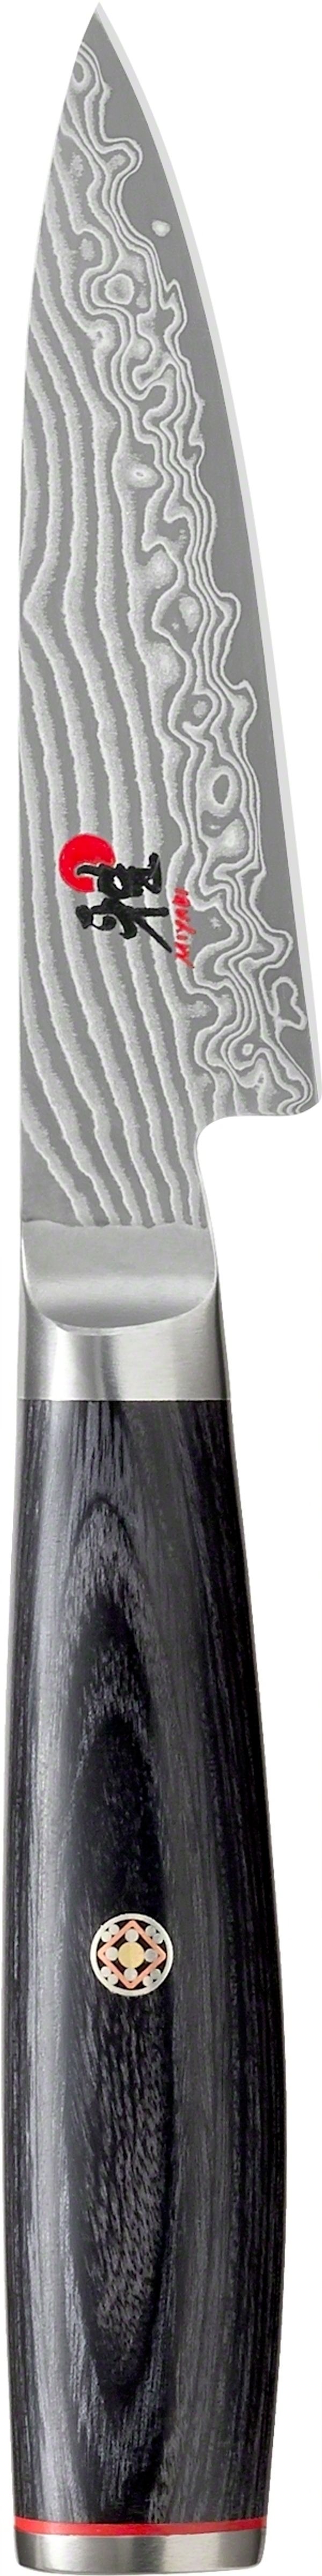 Miyabi 5000FCD Shotoh (Paring) Knife - 9cm